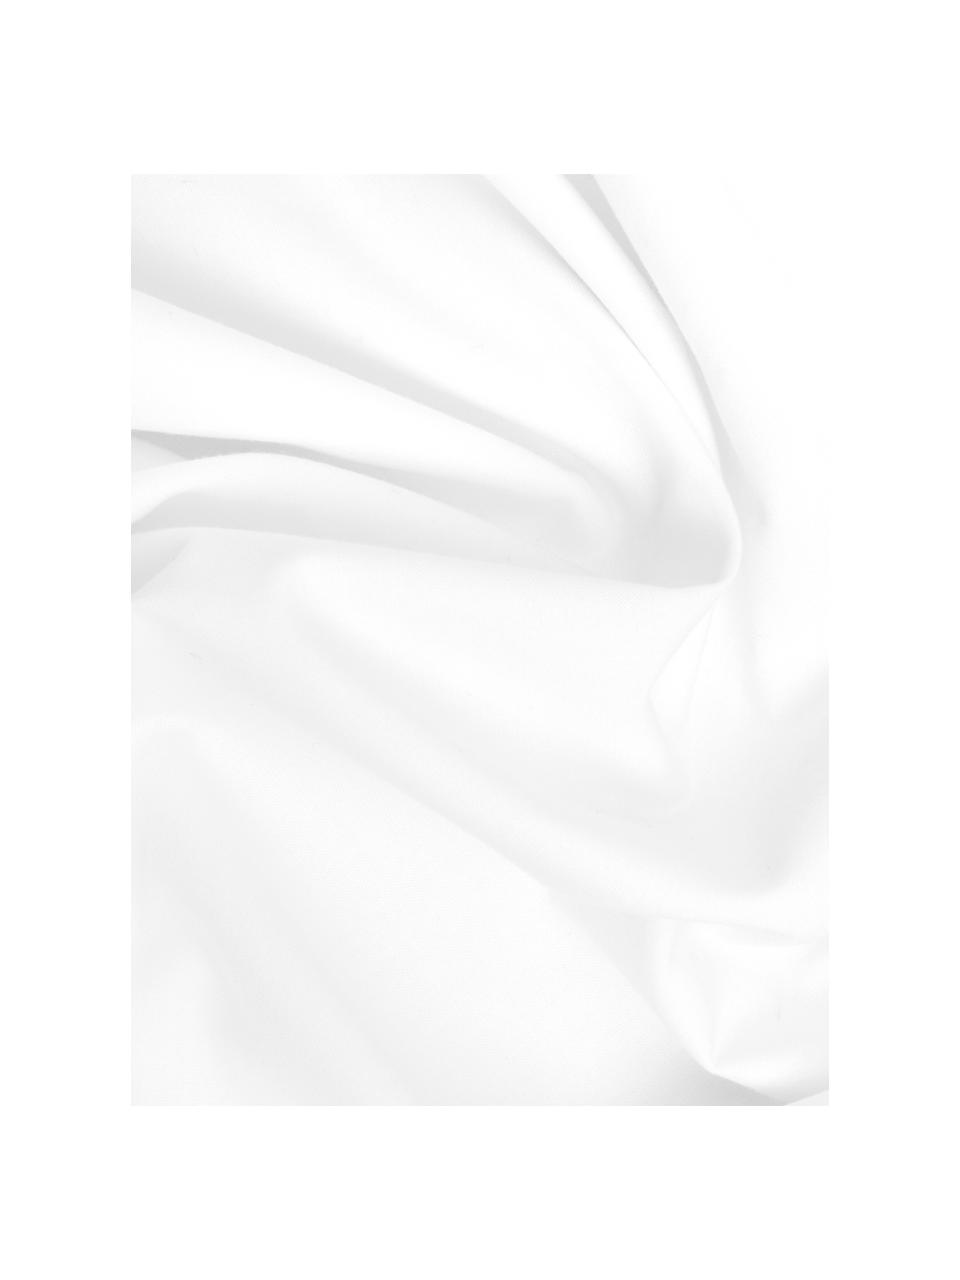 Pościel z perkalu Elsie, Biały, 135 x 200 cm + 1 poduszka 80 x 80 cm